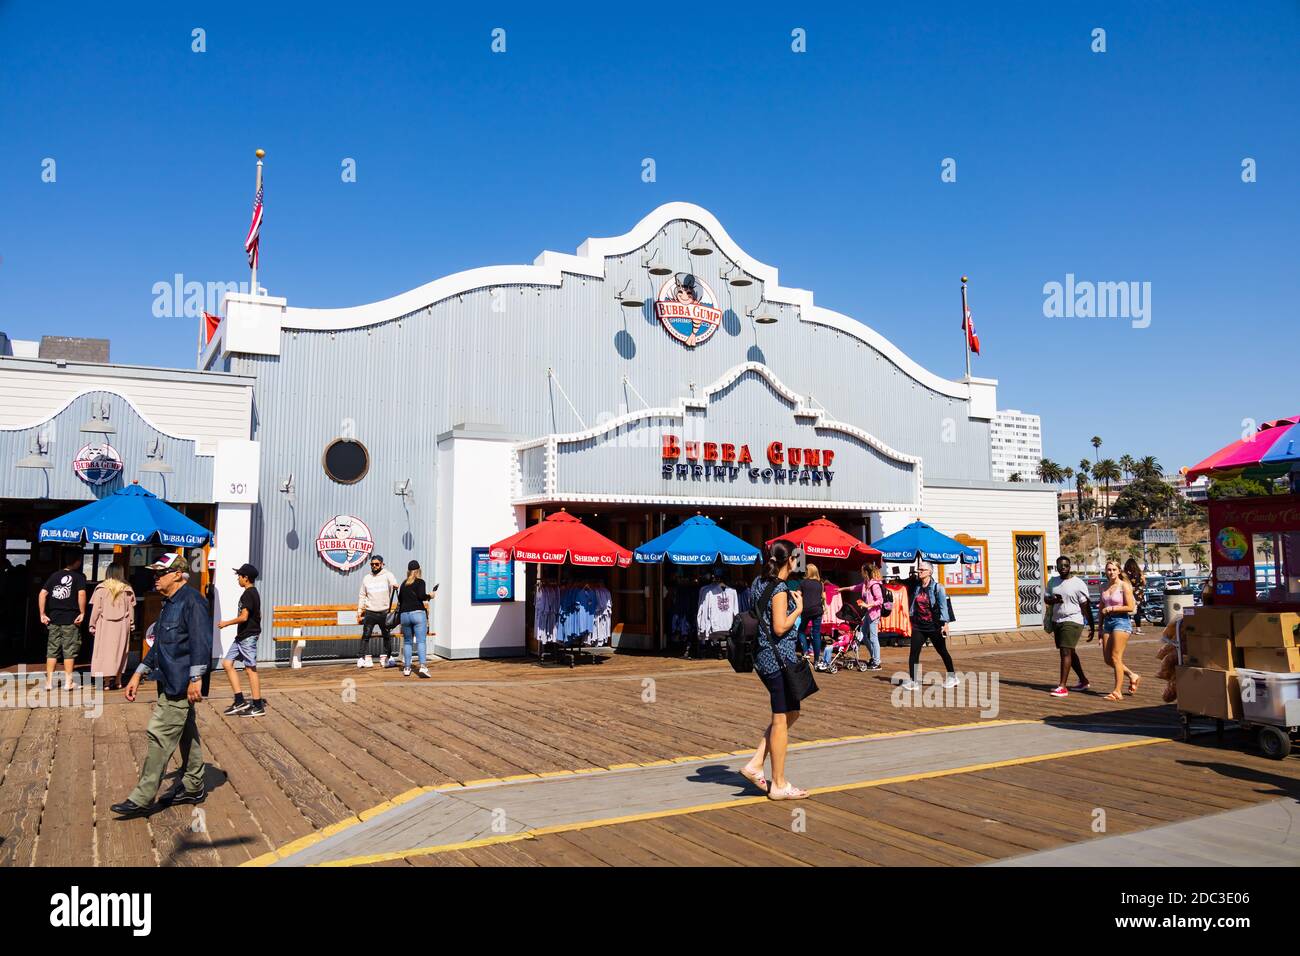 Tourist von der Bubba Gump Shrimp Company Shack, Santa Monica Pier, Kalifornien, Vereinigte Staaten von Amerika Stockfoto